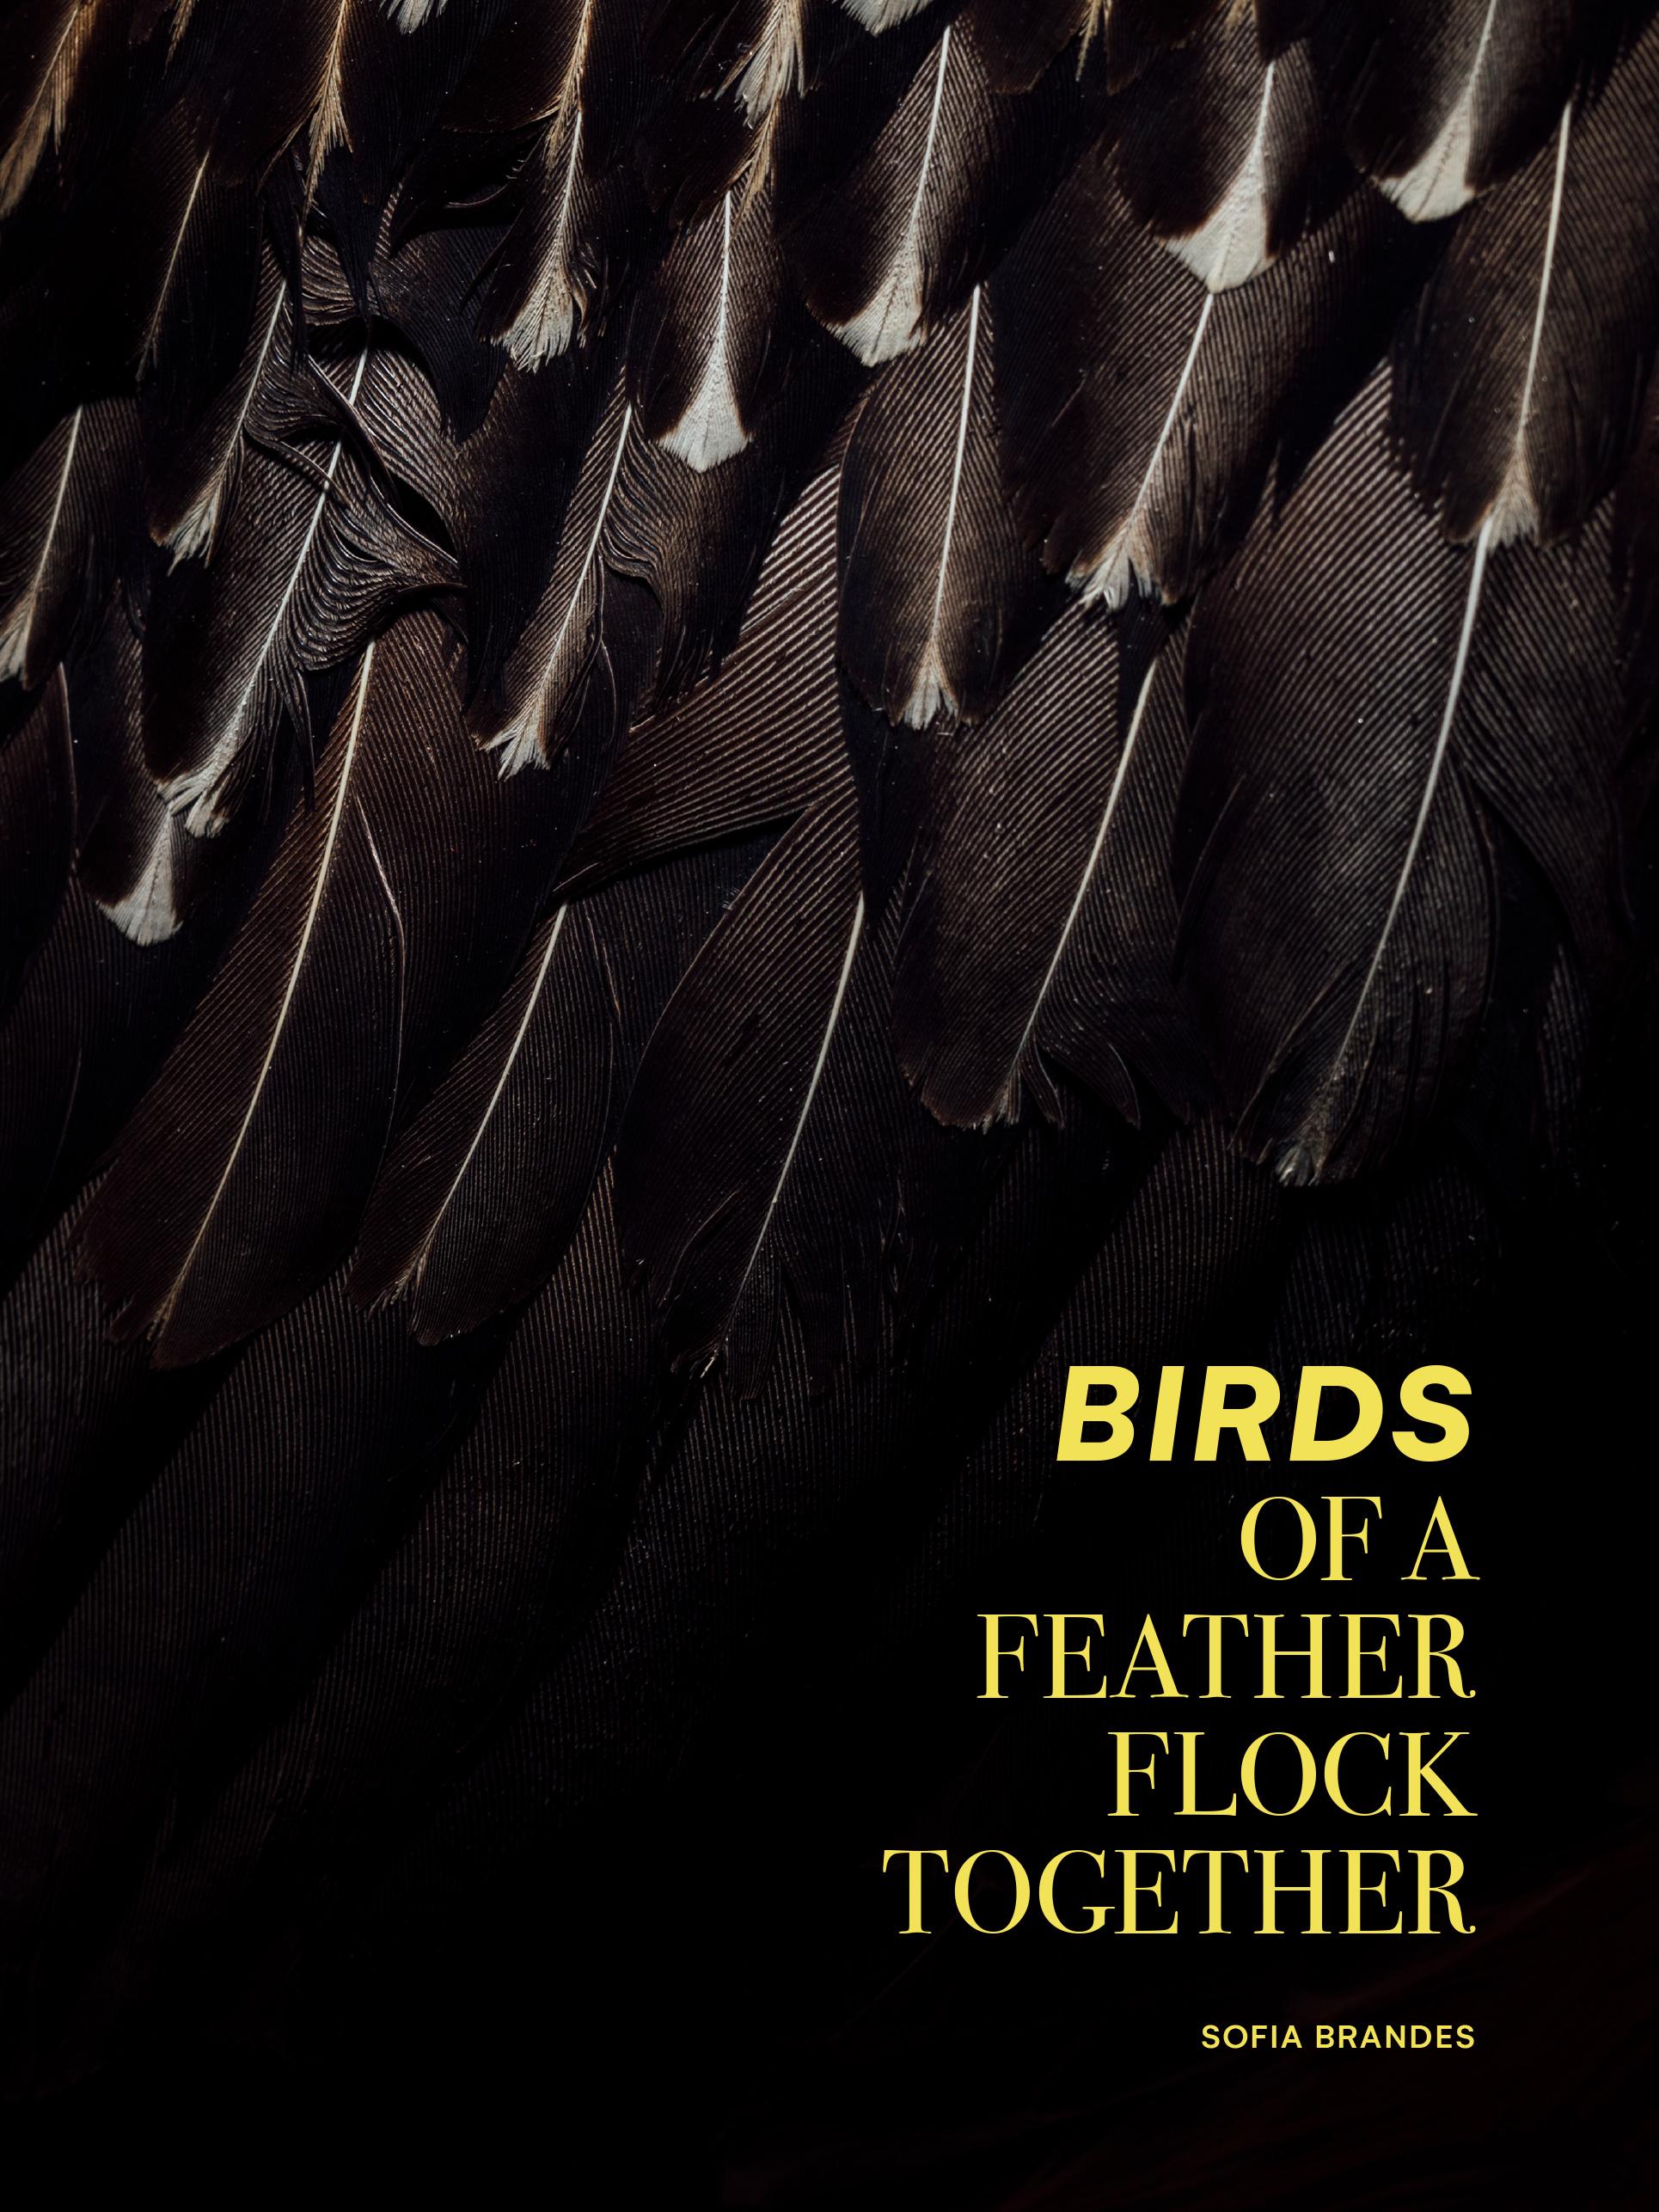 Titelbild des Buches "Bird of a Feather Flock Together"